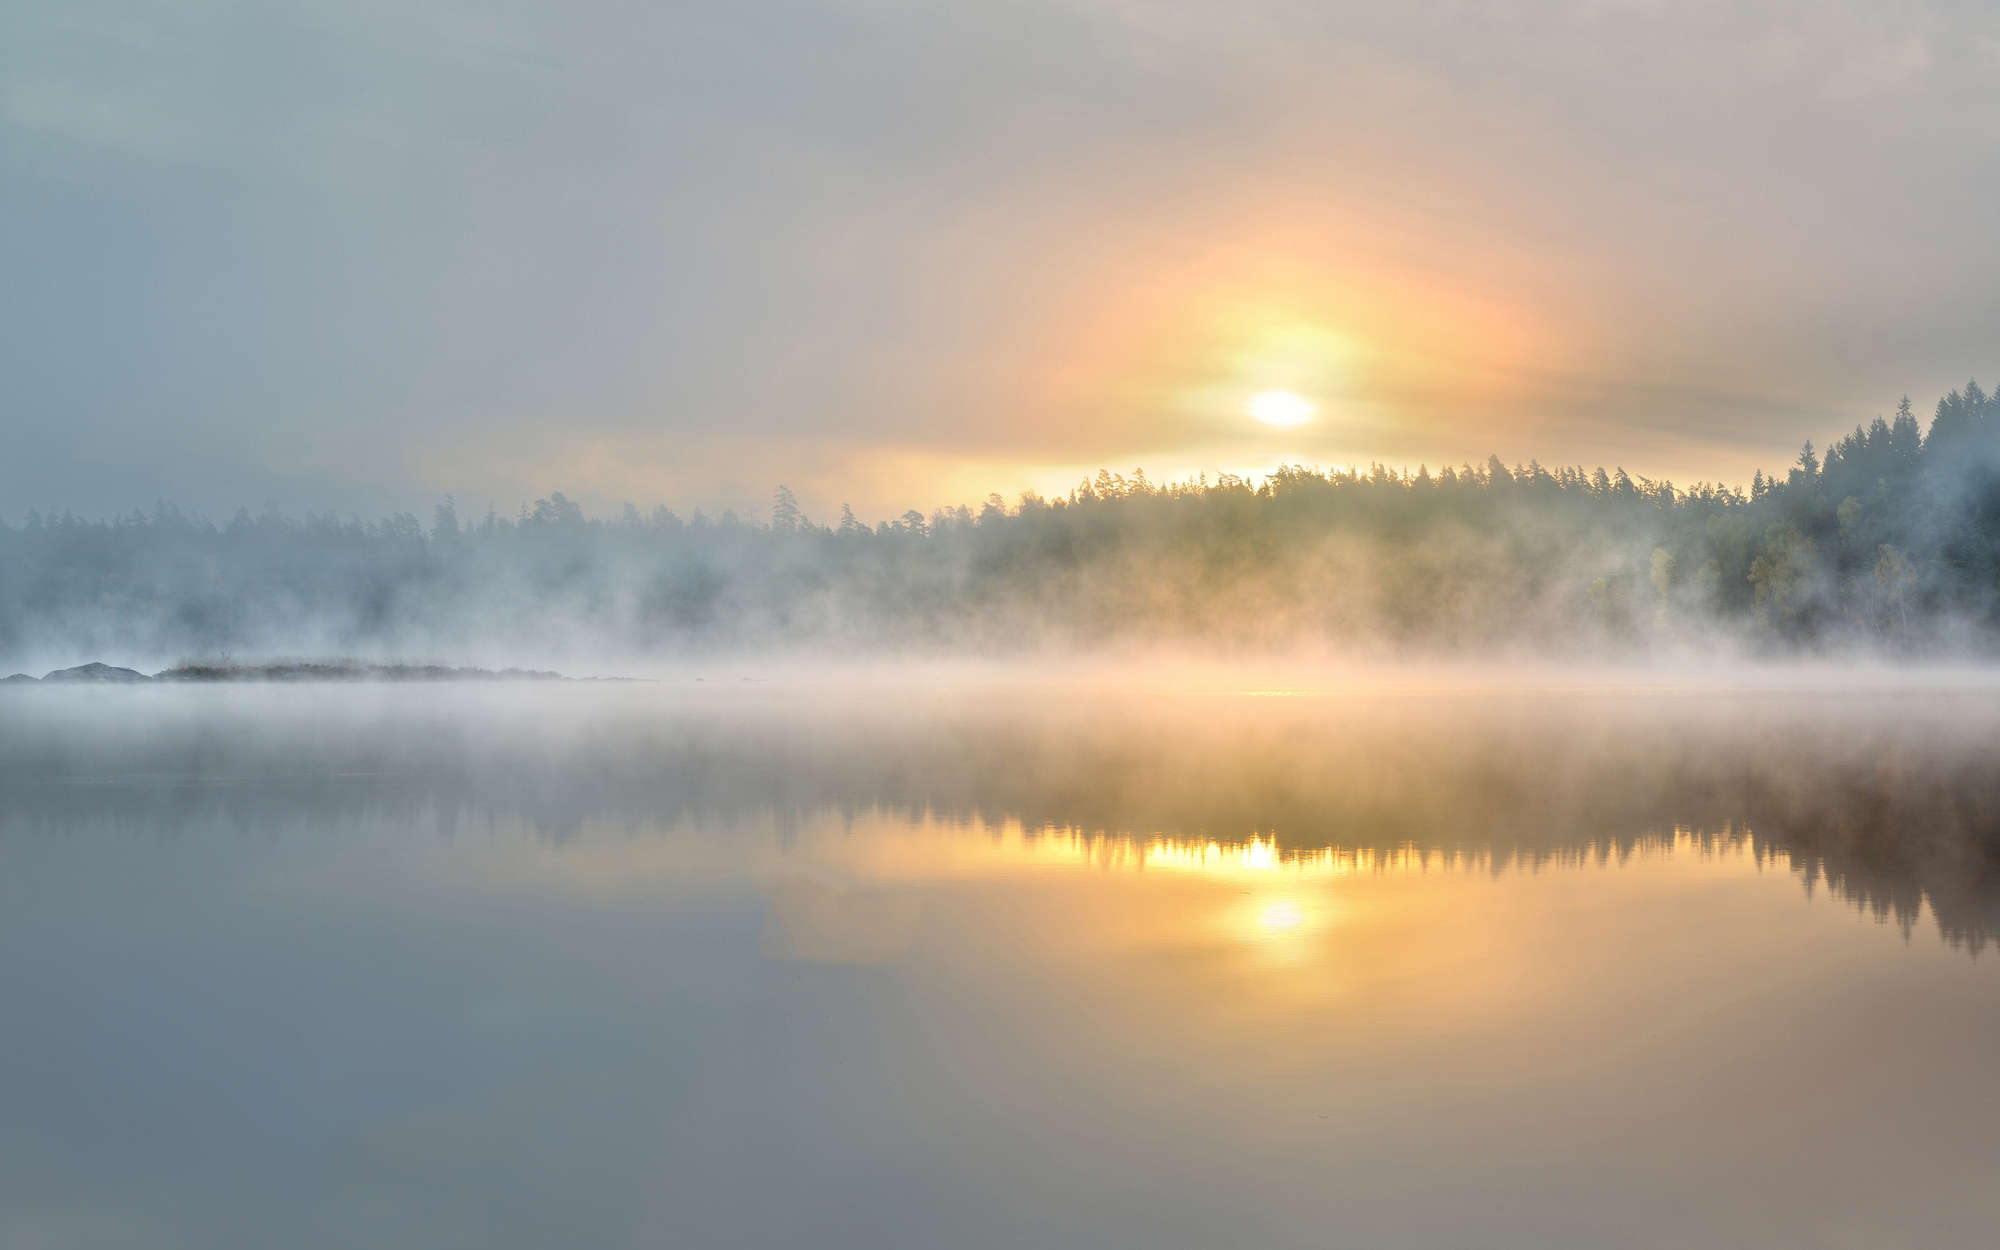             Fototapete nebeliger Morgen am See – Strukturiertes Vlies
        